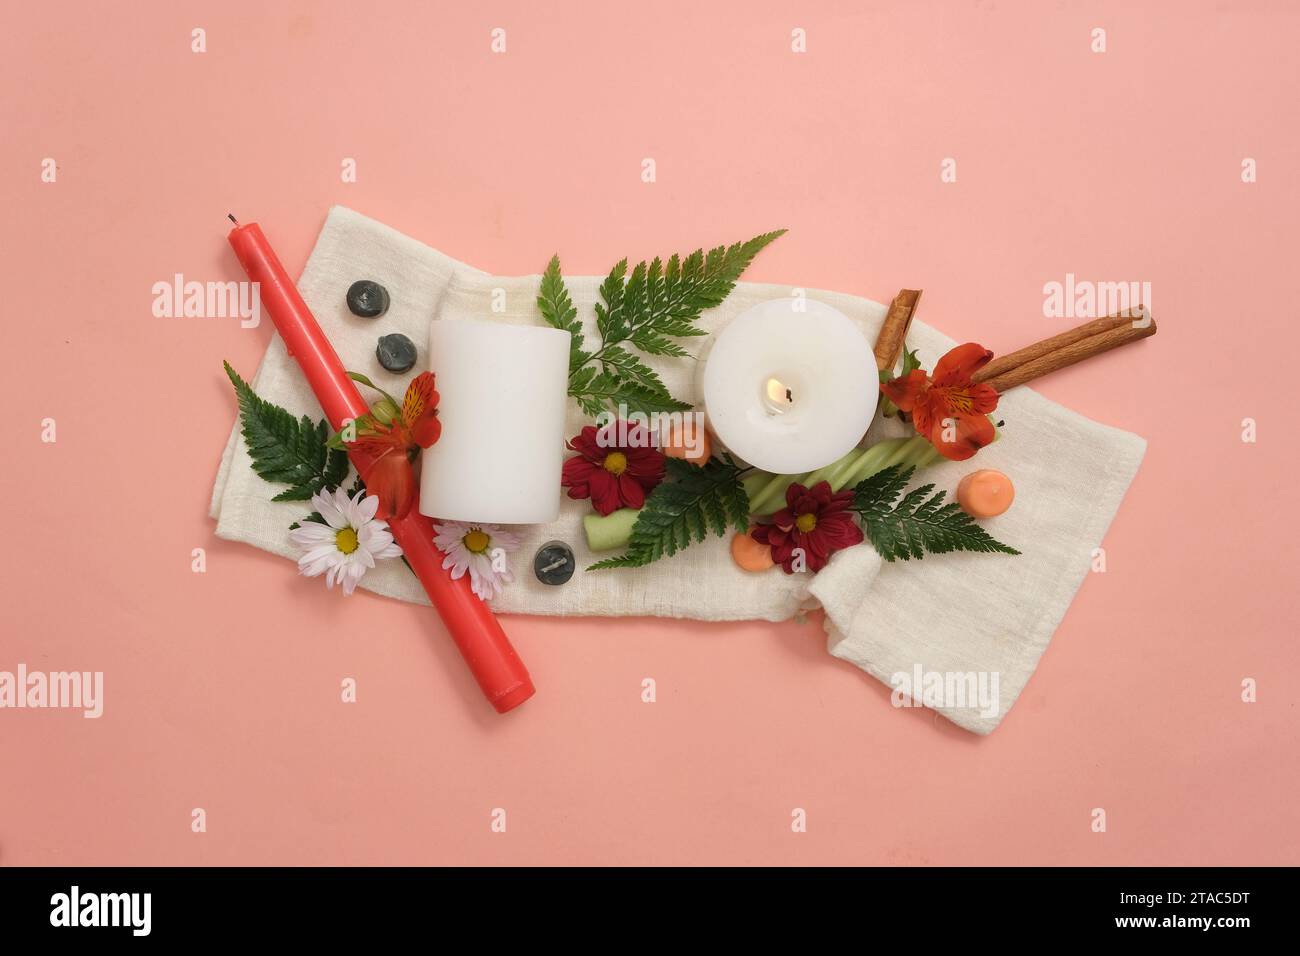 Bougies, fleurs fraîches, cannelle et feuilles vertes sont artistiquement décorées sur un fond rose avec un tissu blanc. Soyez créatif avec des bougies colorées Banque D'Images